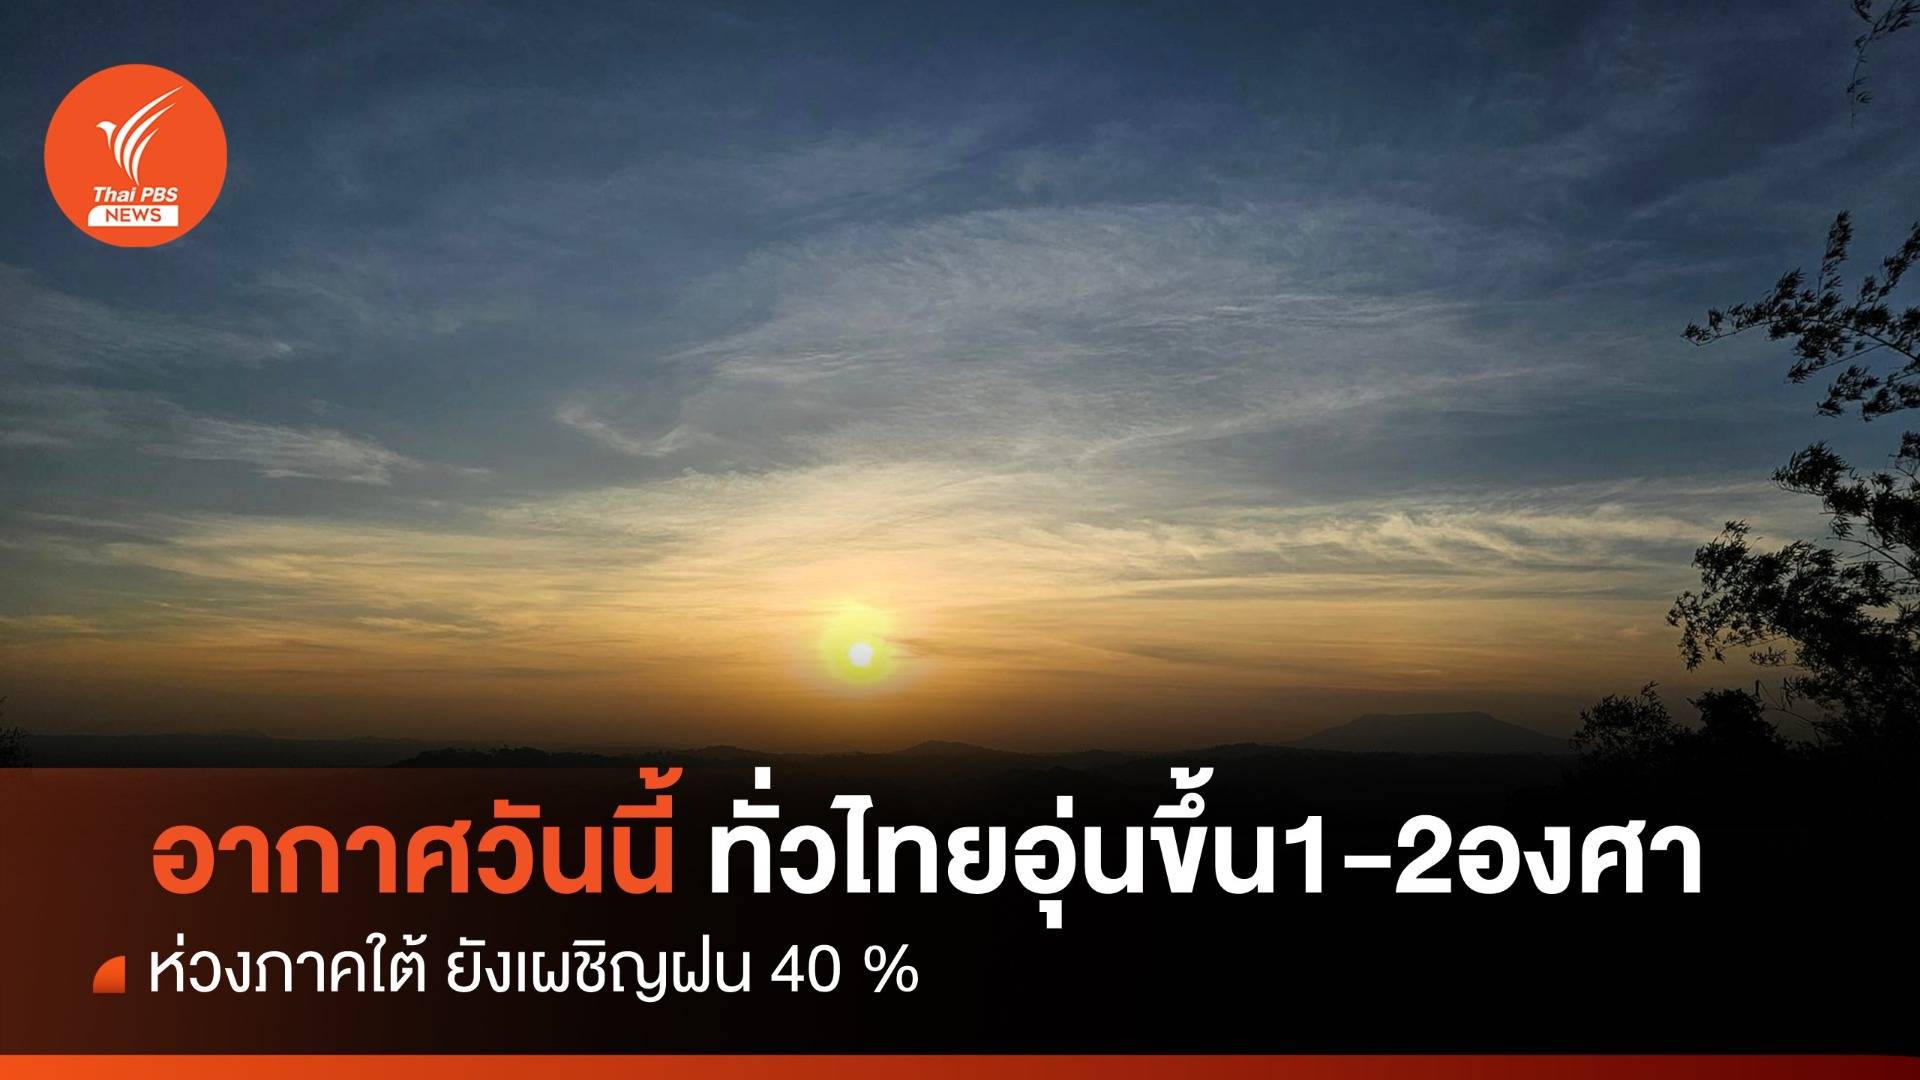 สภาพอากาศวันนี้ ทั่วไทยอุ่นขึ้น 1-2 องศาฯ ภาคใต้เผชิญฝน 40%